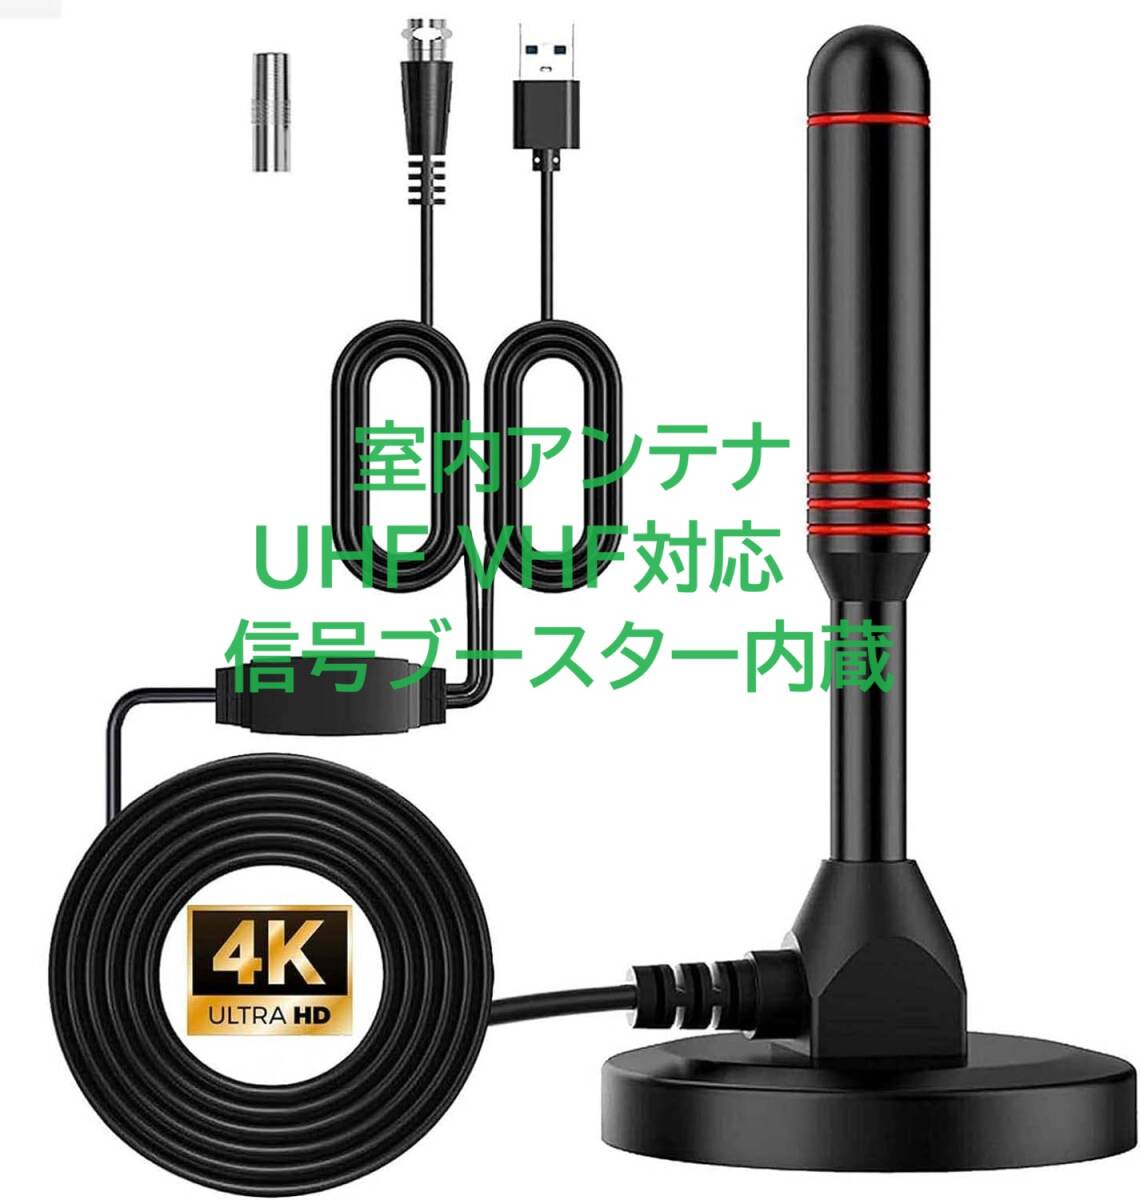 YaizK телевизор антенна салон 4K HD бесплатный просмотр 530KM прием область автомобильный высокочувствительный USB тип простой подключение . сила японский язык инструкция по эксплуатации 